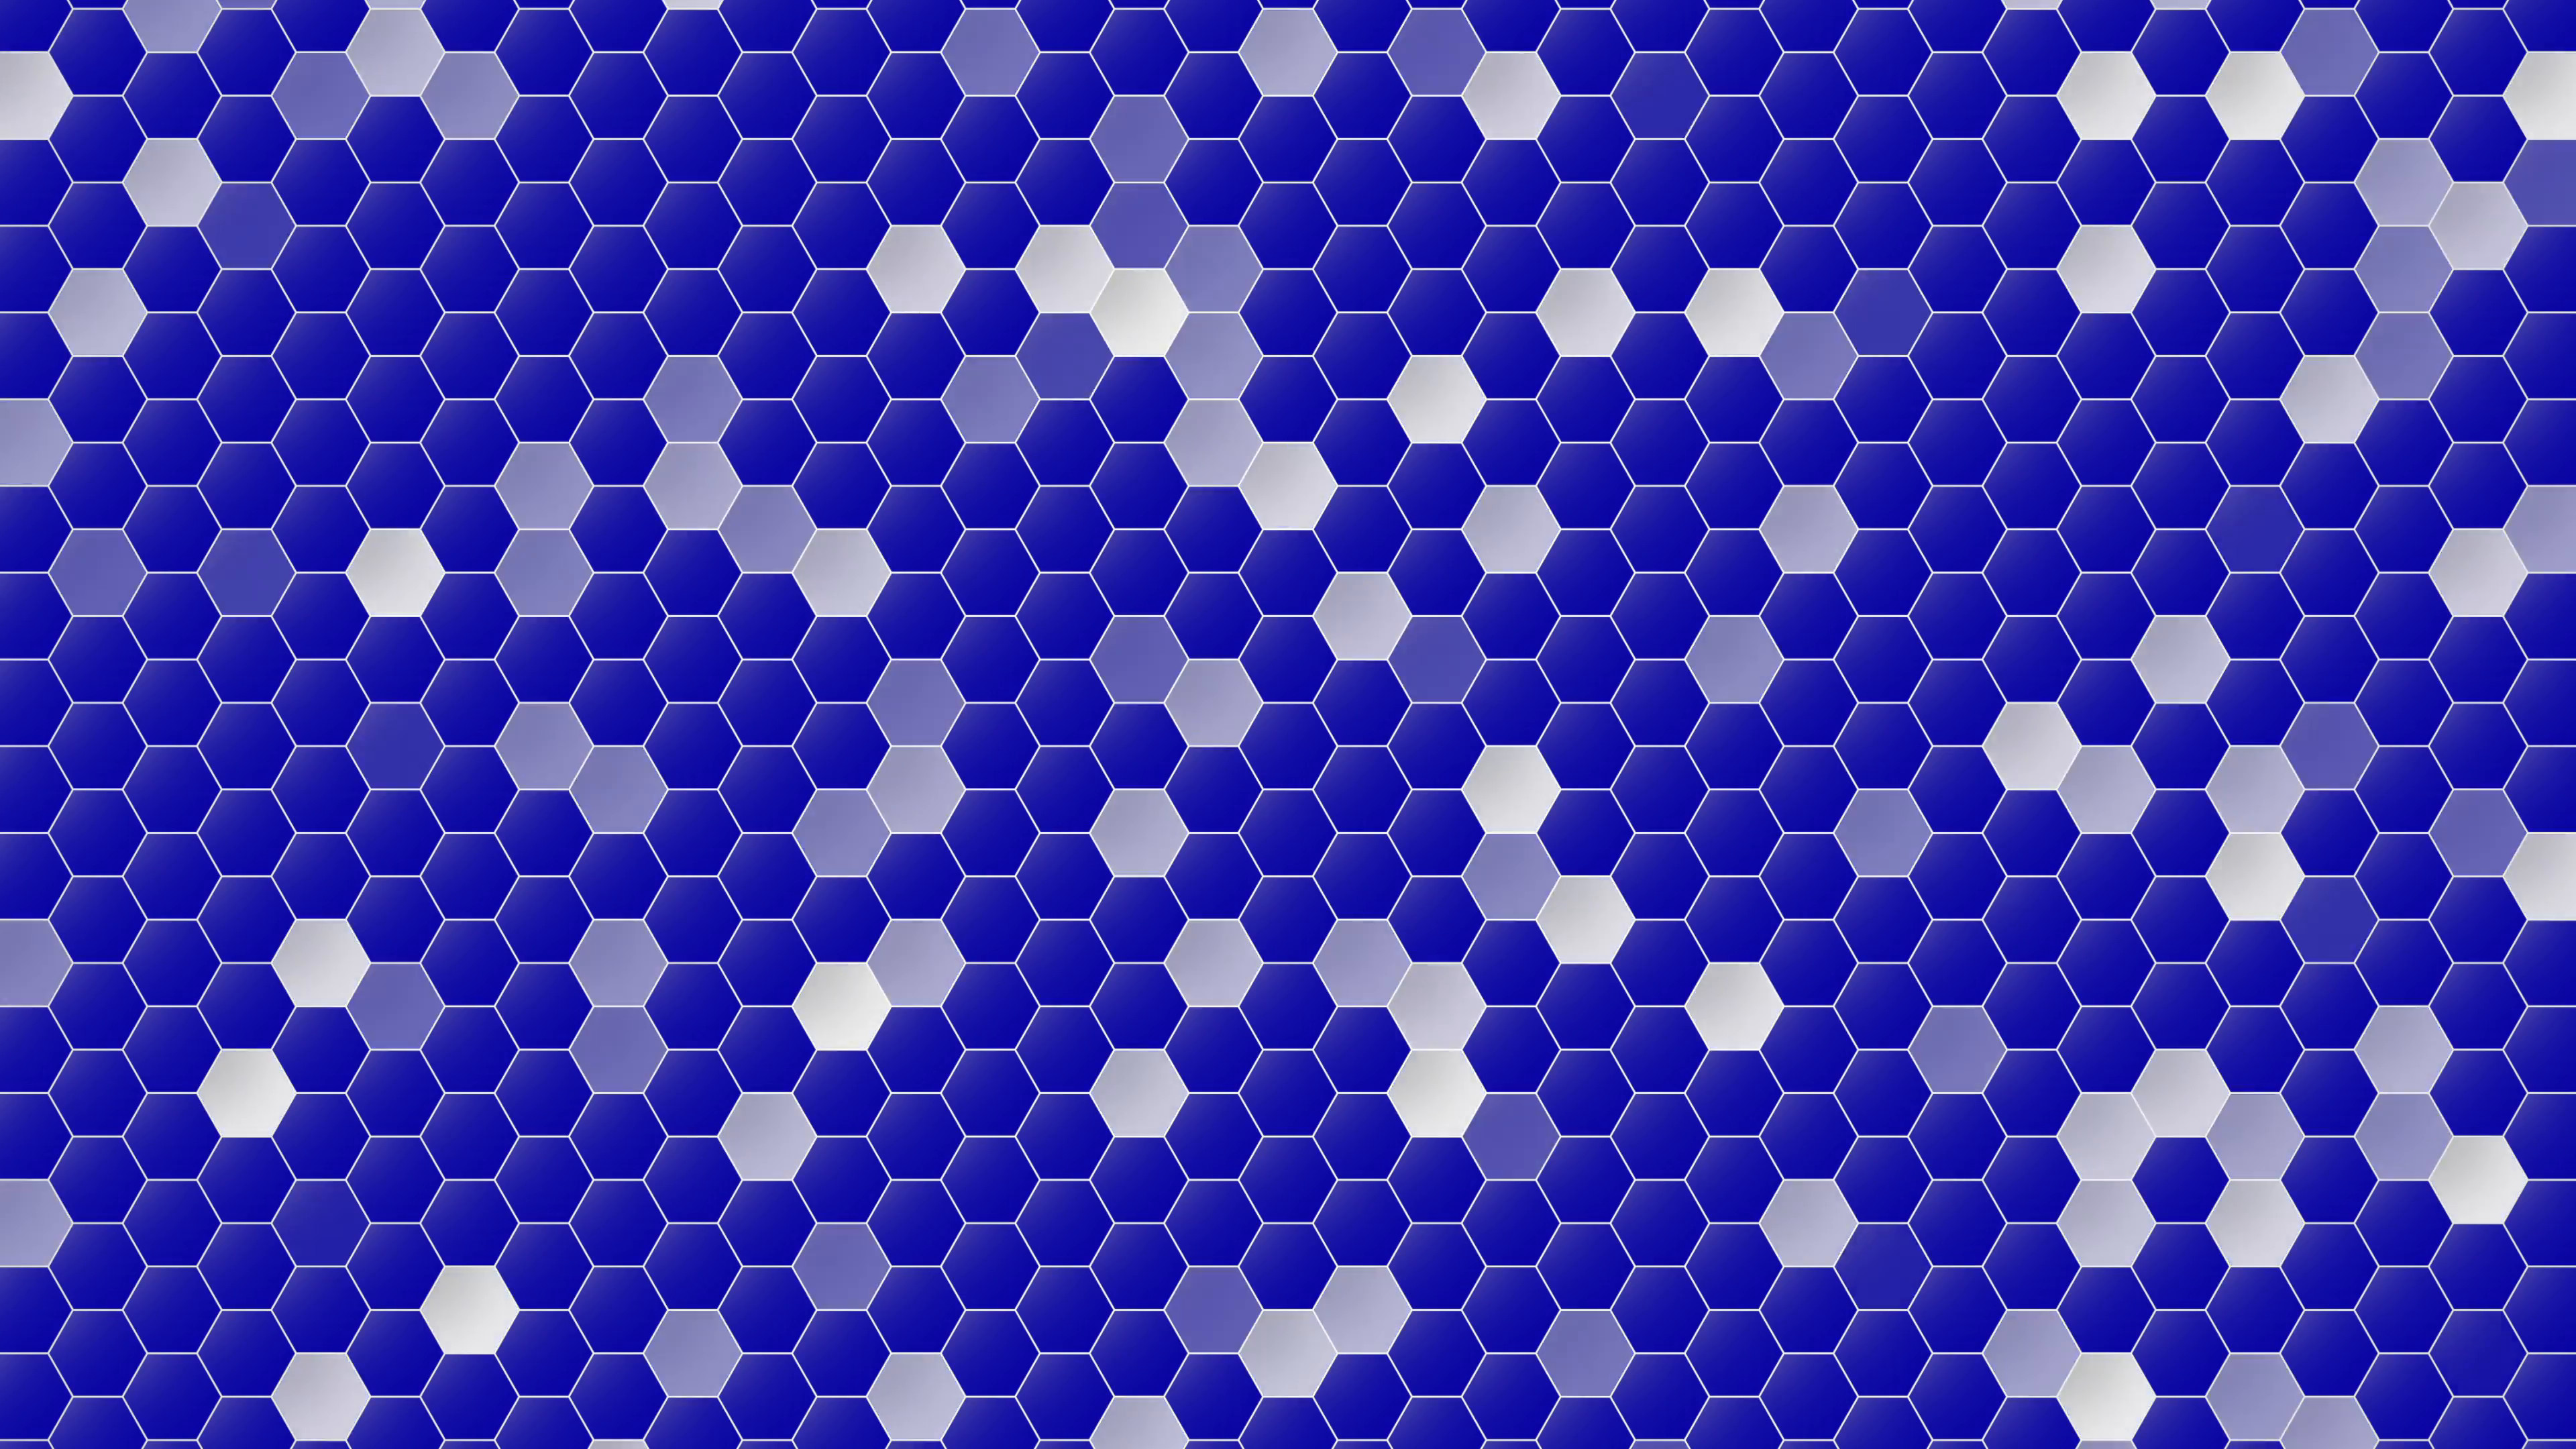 3840x2160 Animated blinking white squares on blue background element Motion  Background - VideoBlocks